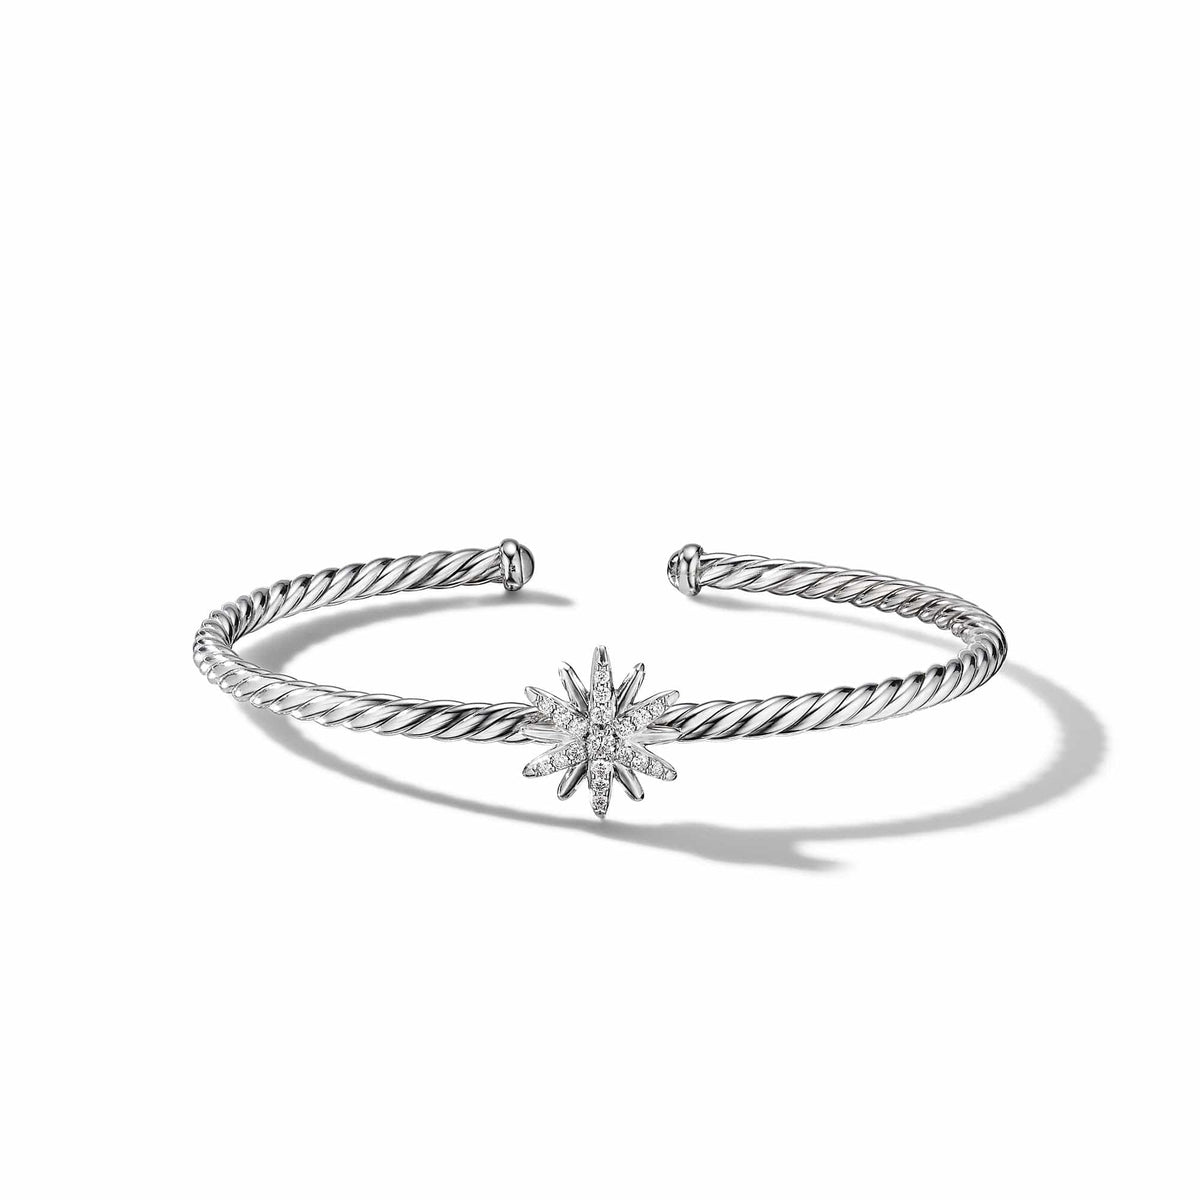 Starburst Center Station Bracelet with Pavé Diamonds, Sterling Silver, Long's Jewelers